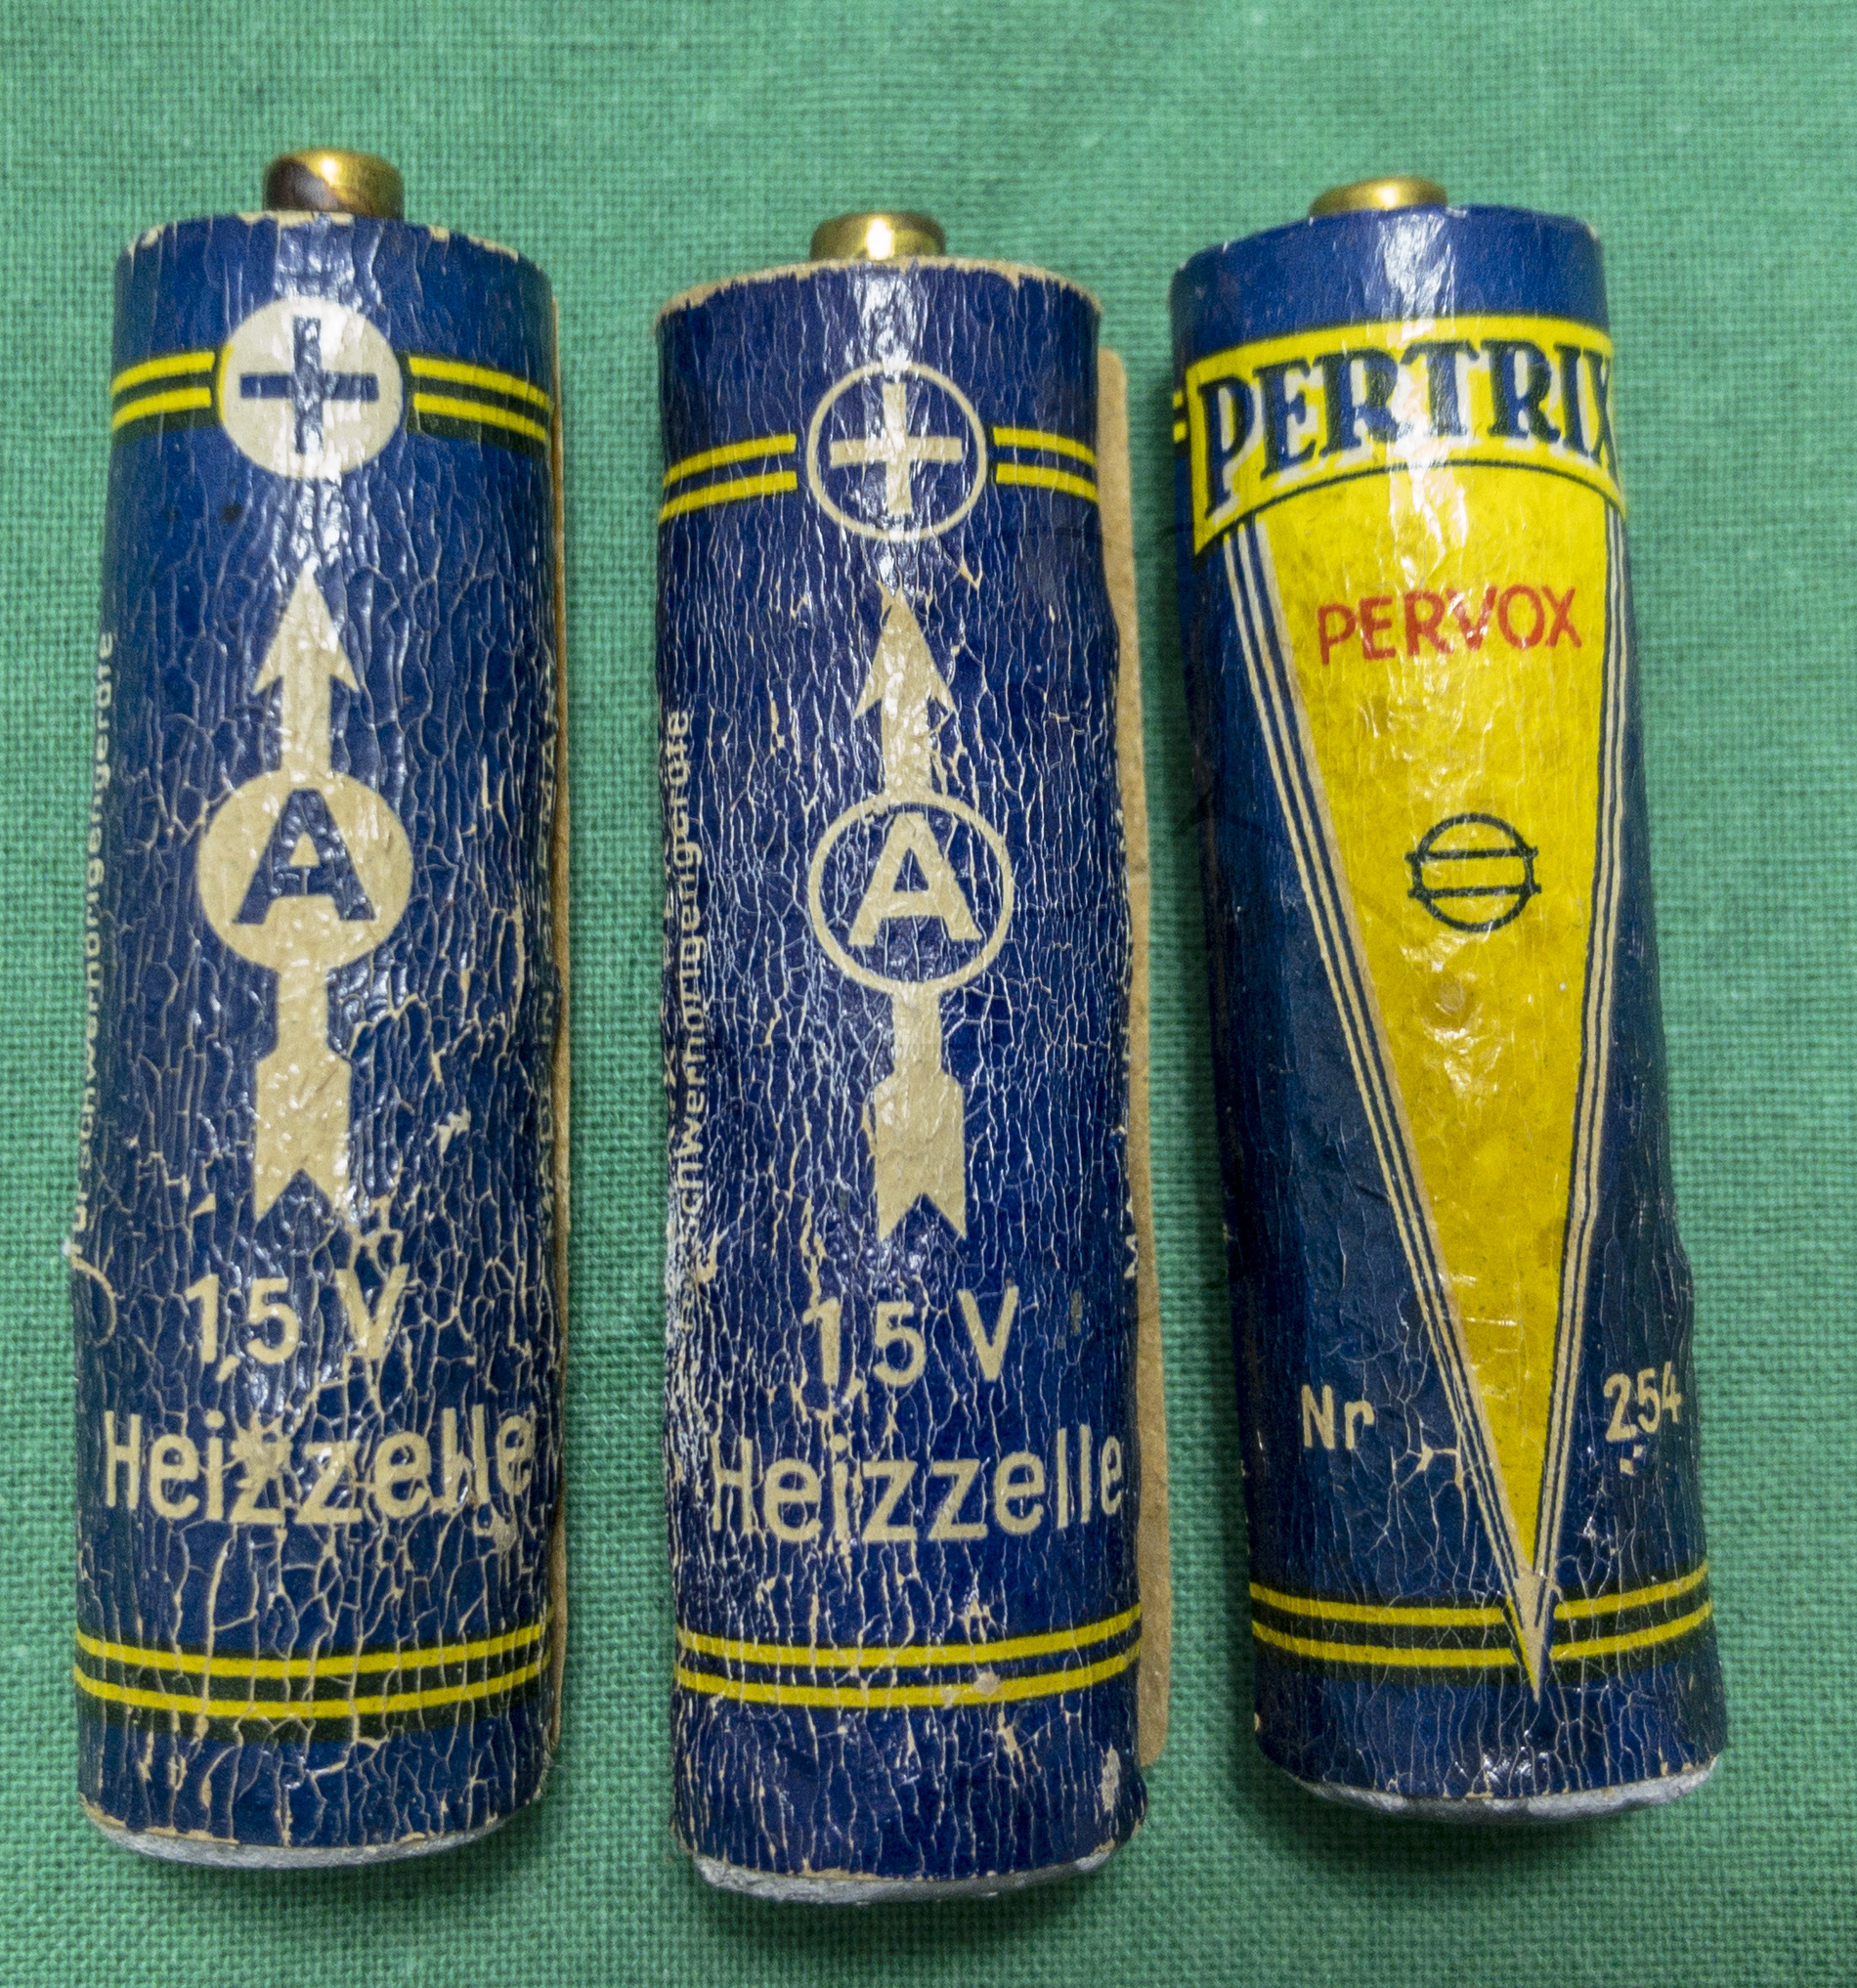 Hörgerät "Fortiphone Type 20", ca. 1949, Batterien für die Röhrenheizung (Heizzelle) mit 1,5 Volt